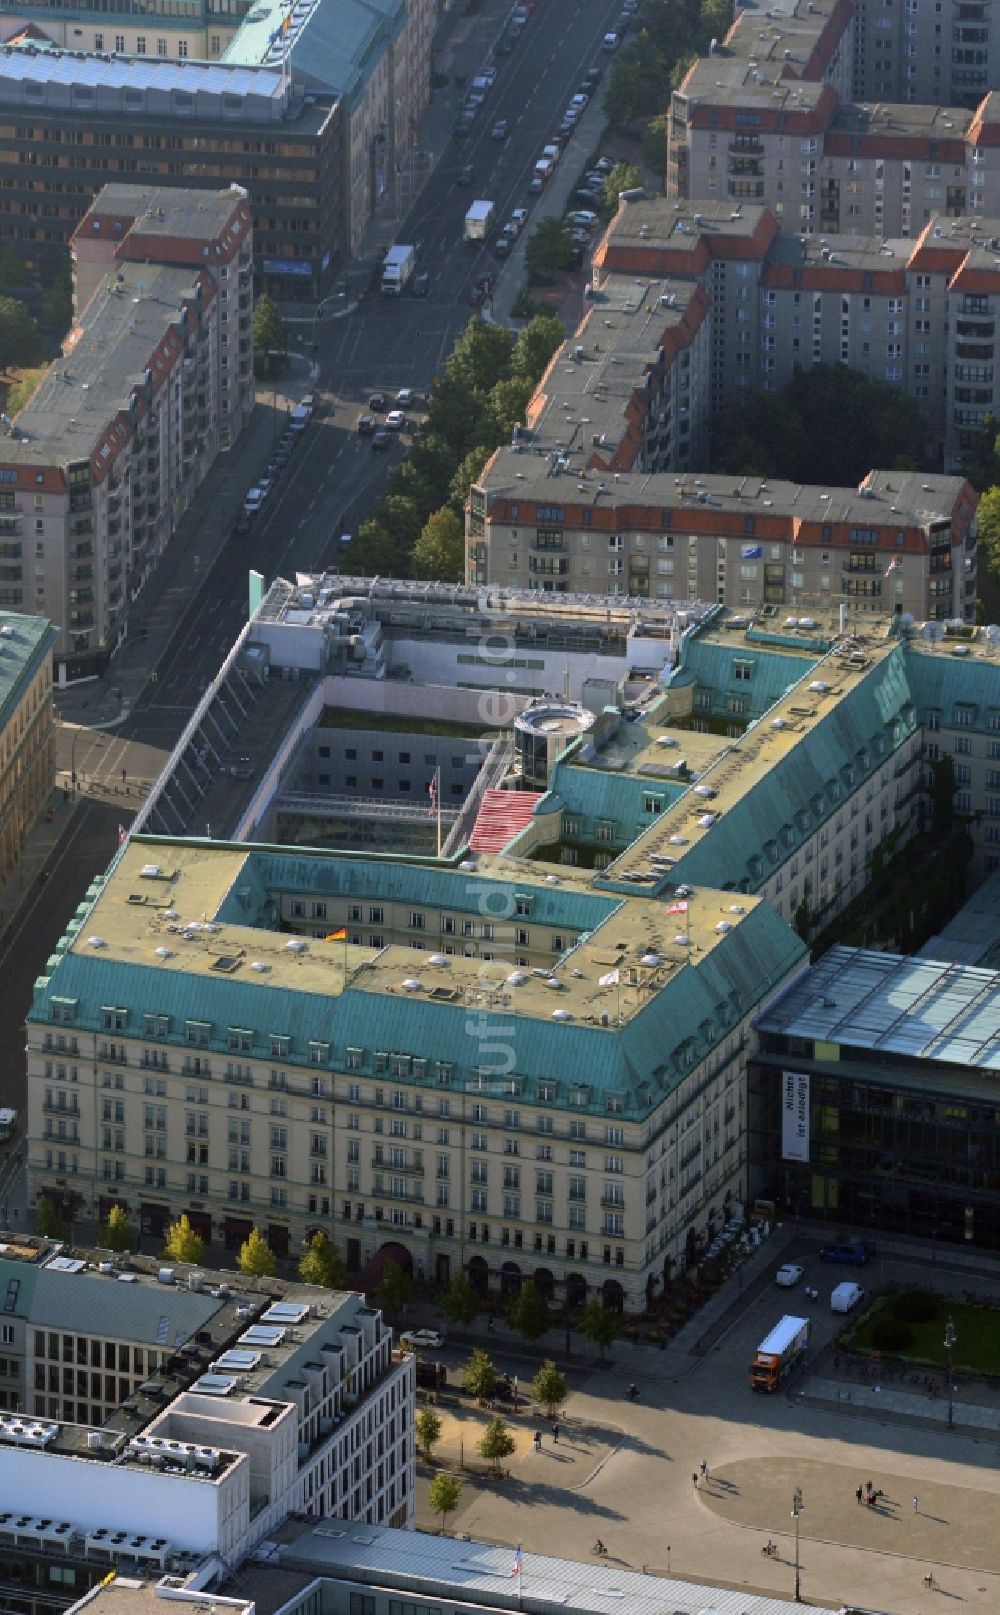 Berlin Mitte von oben - Britische und US-Botschaft, Akademie der Künste, Hotel Adlon am Pariser Platz in Berlin-Mitte